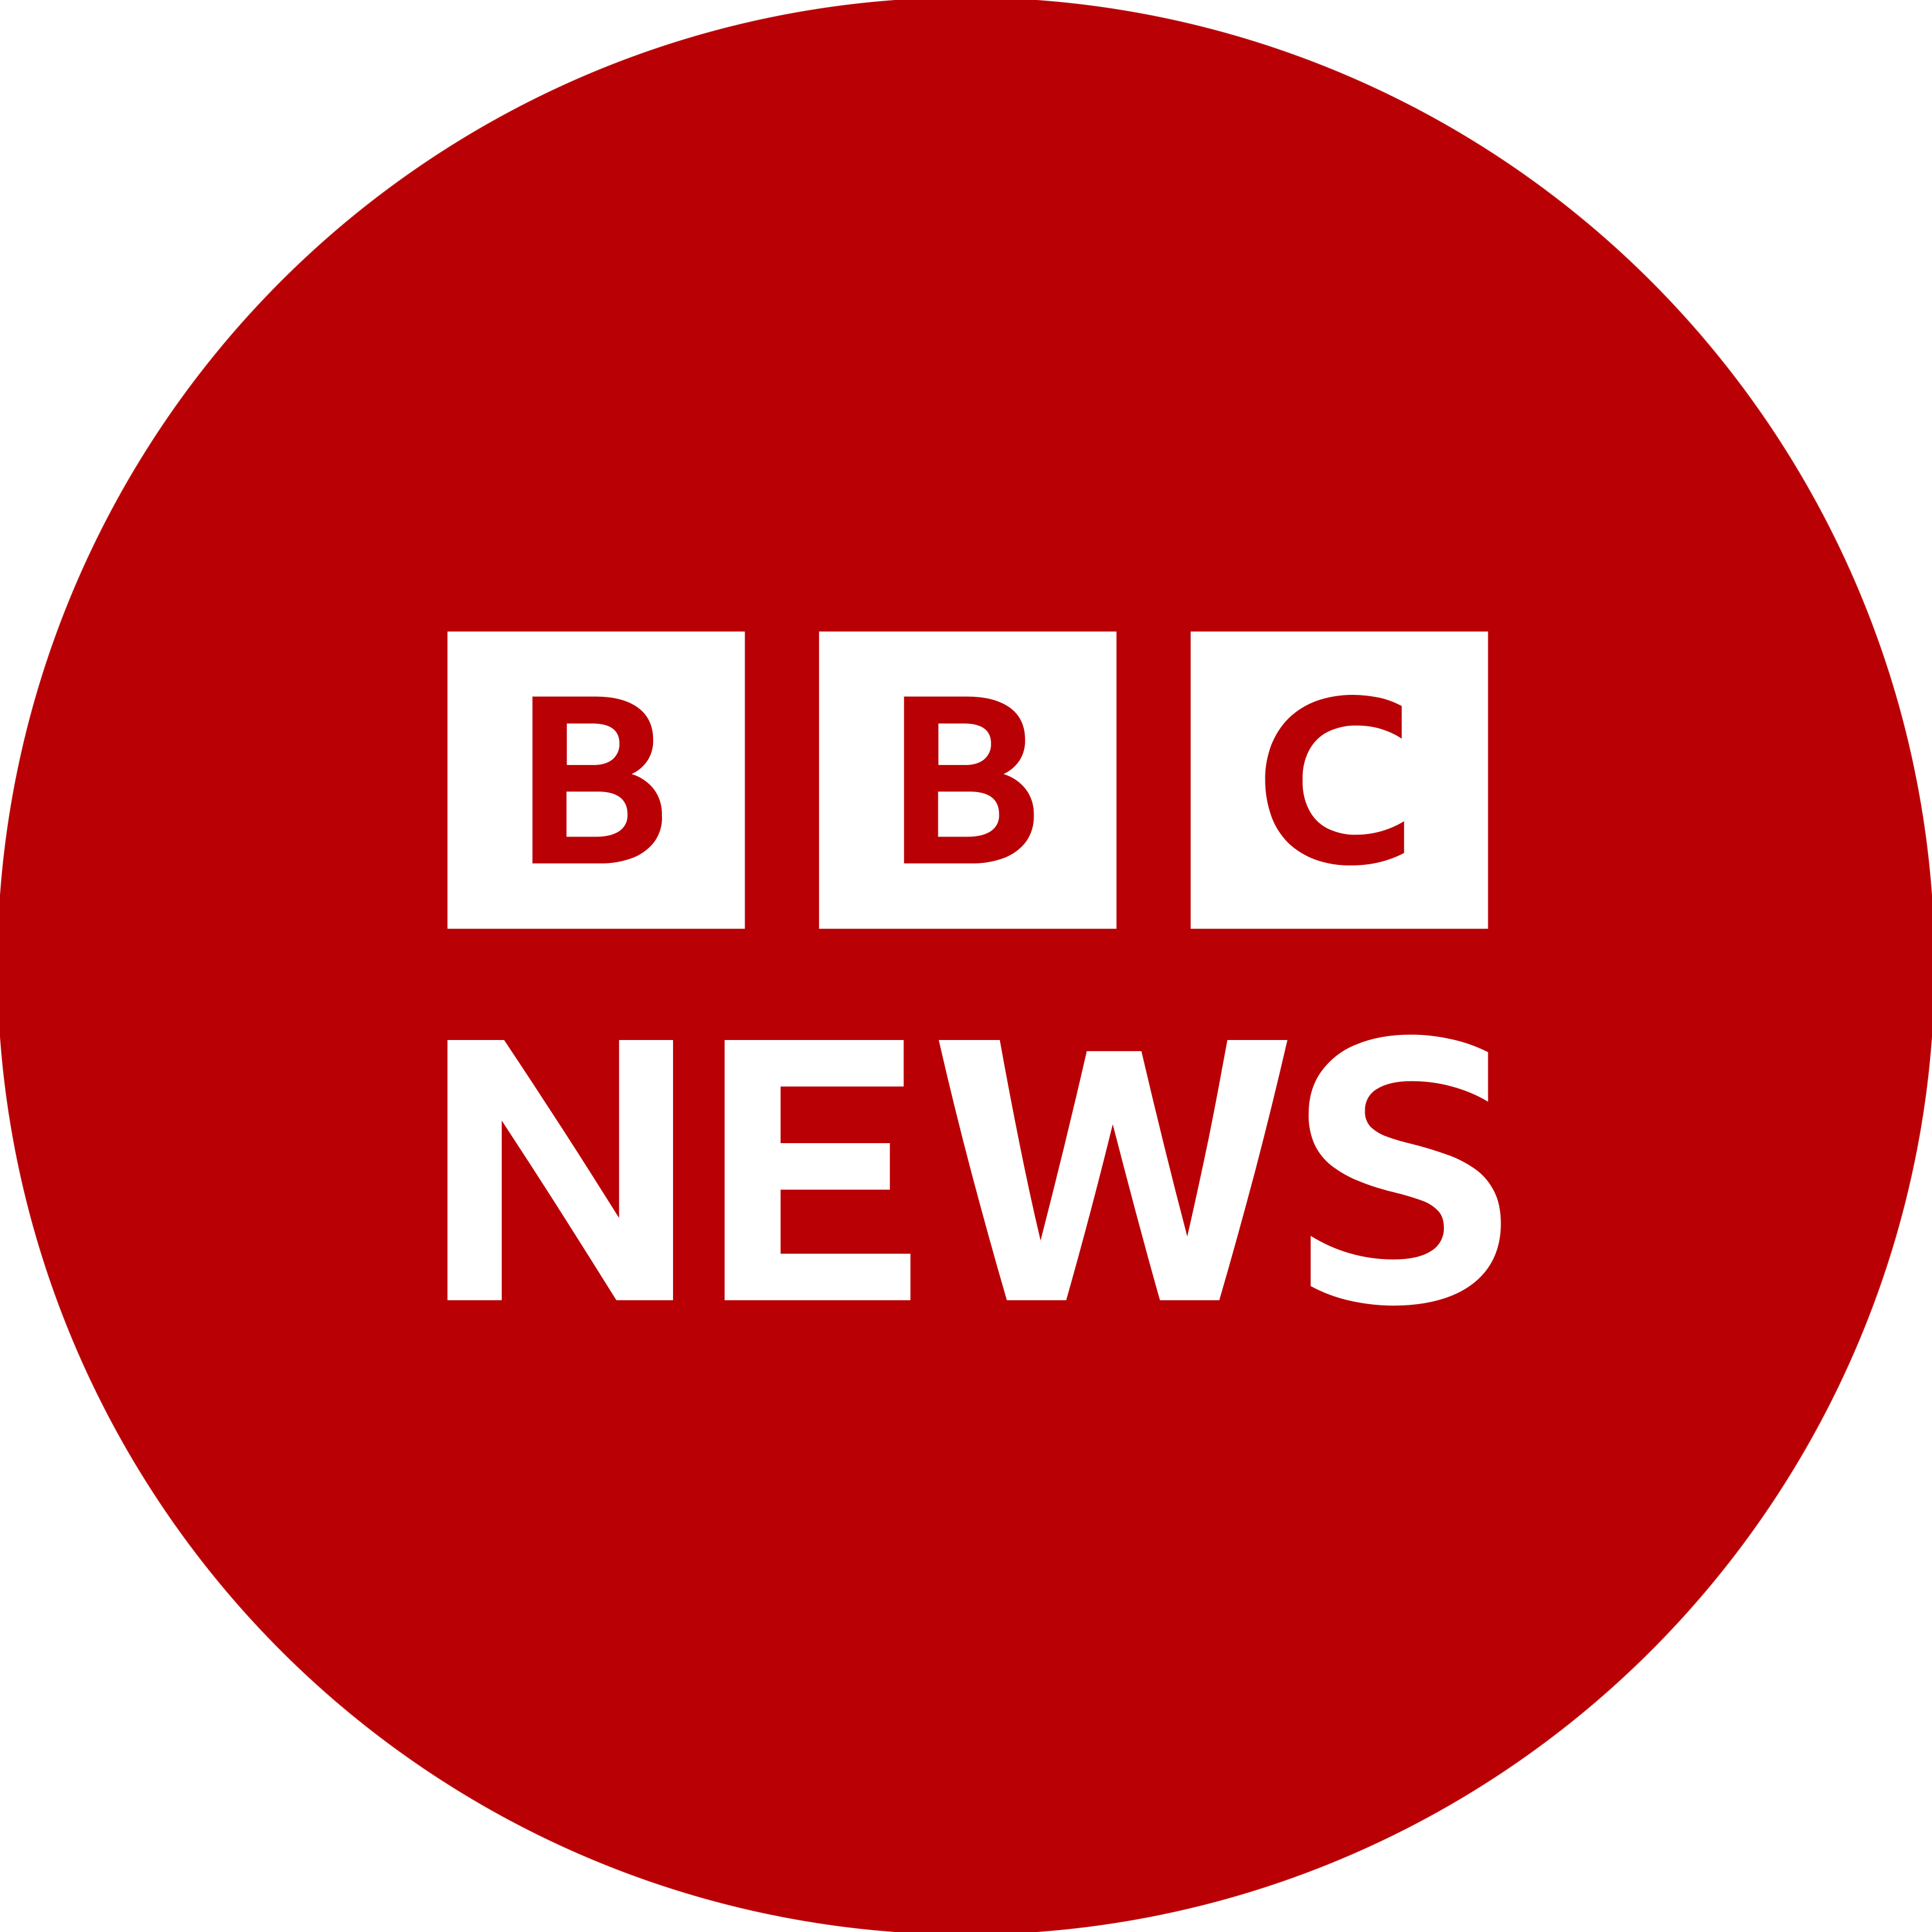 BBC News Logo Transparent Photo